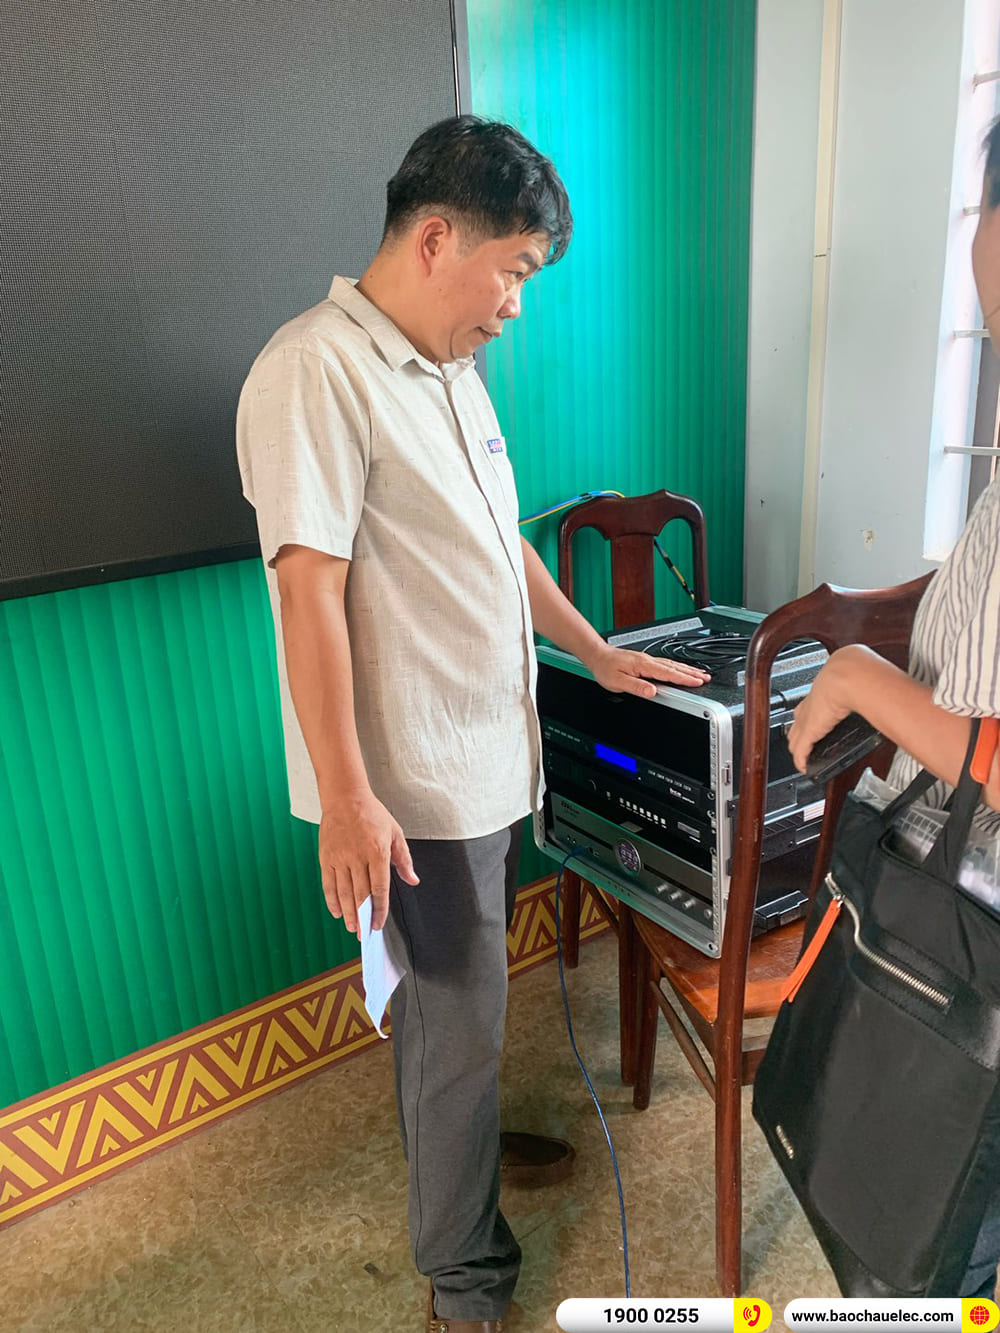 Lắp đặt dàn âm thanh hội trường Denon cho trường THPT Nguyễn Trãi ở Đăk Lăk